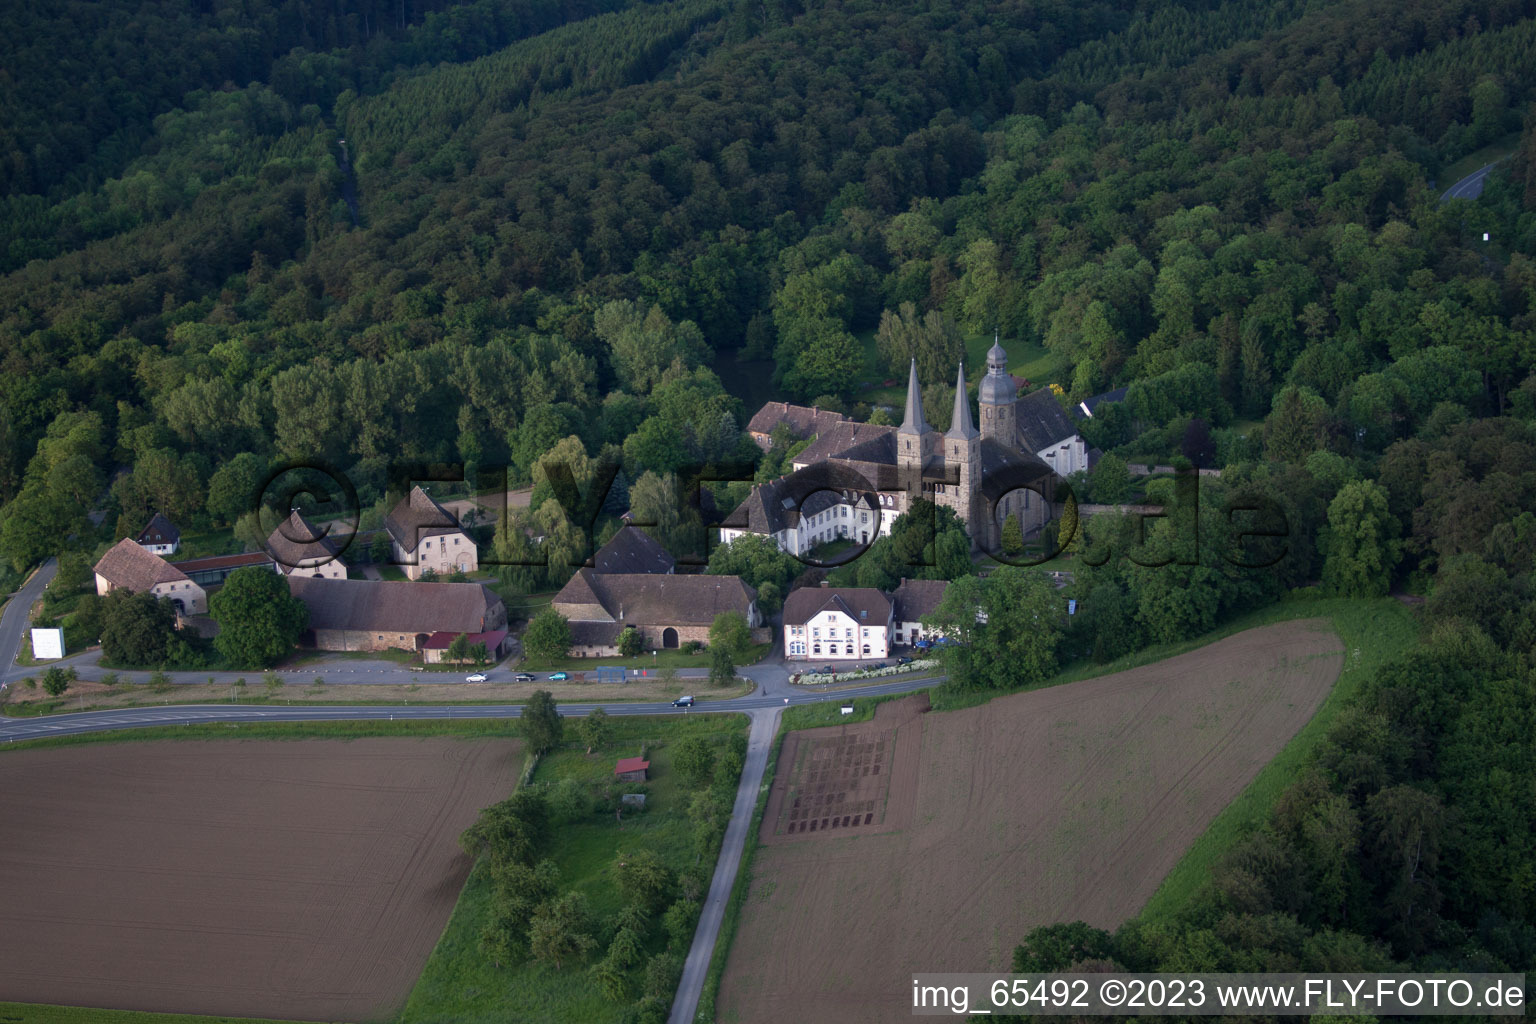 Vue aérienne de Ensemble immobilier du monastère abbatial Marienmünster à Marienmünster dans le département Rhénanie du Nord-Westphalie, Allemagne